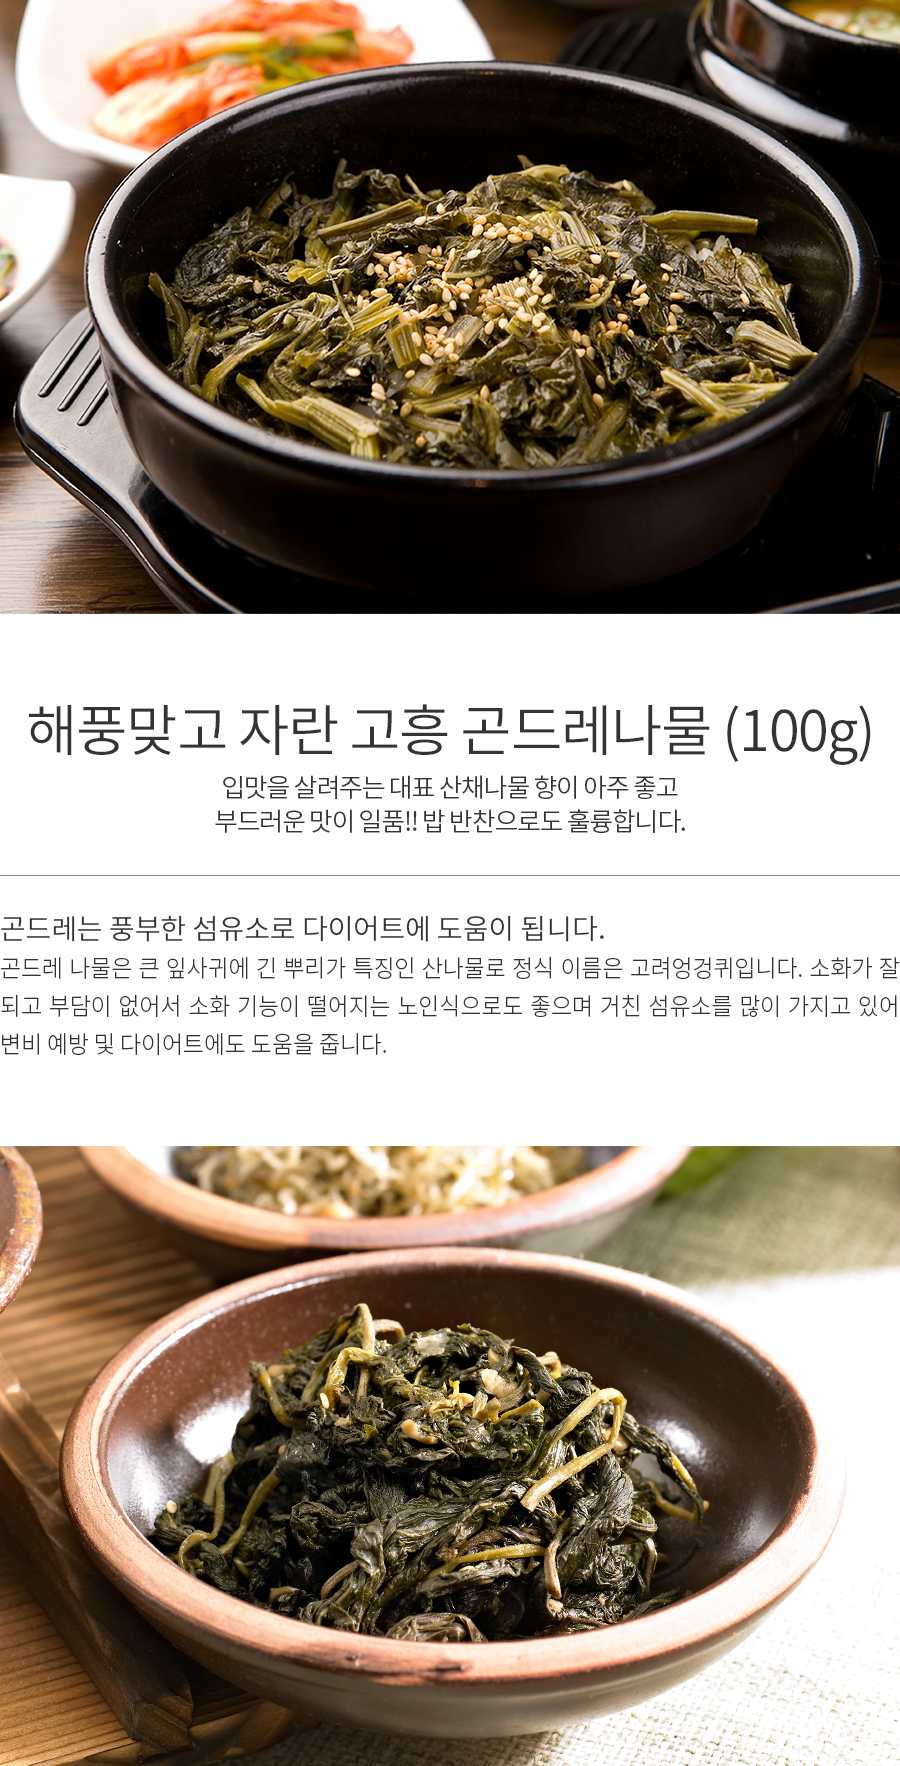 韓國食品-[고흥] 해풍맞고자란 곤드레 100g